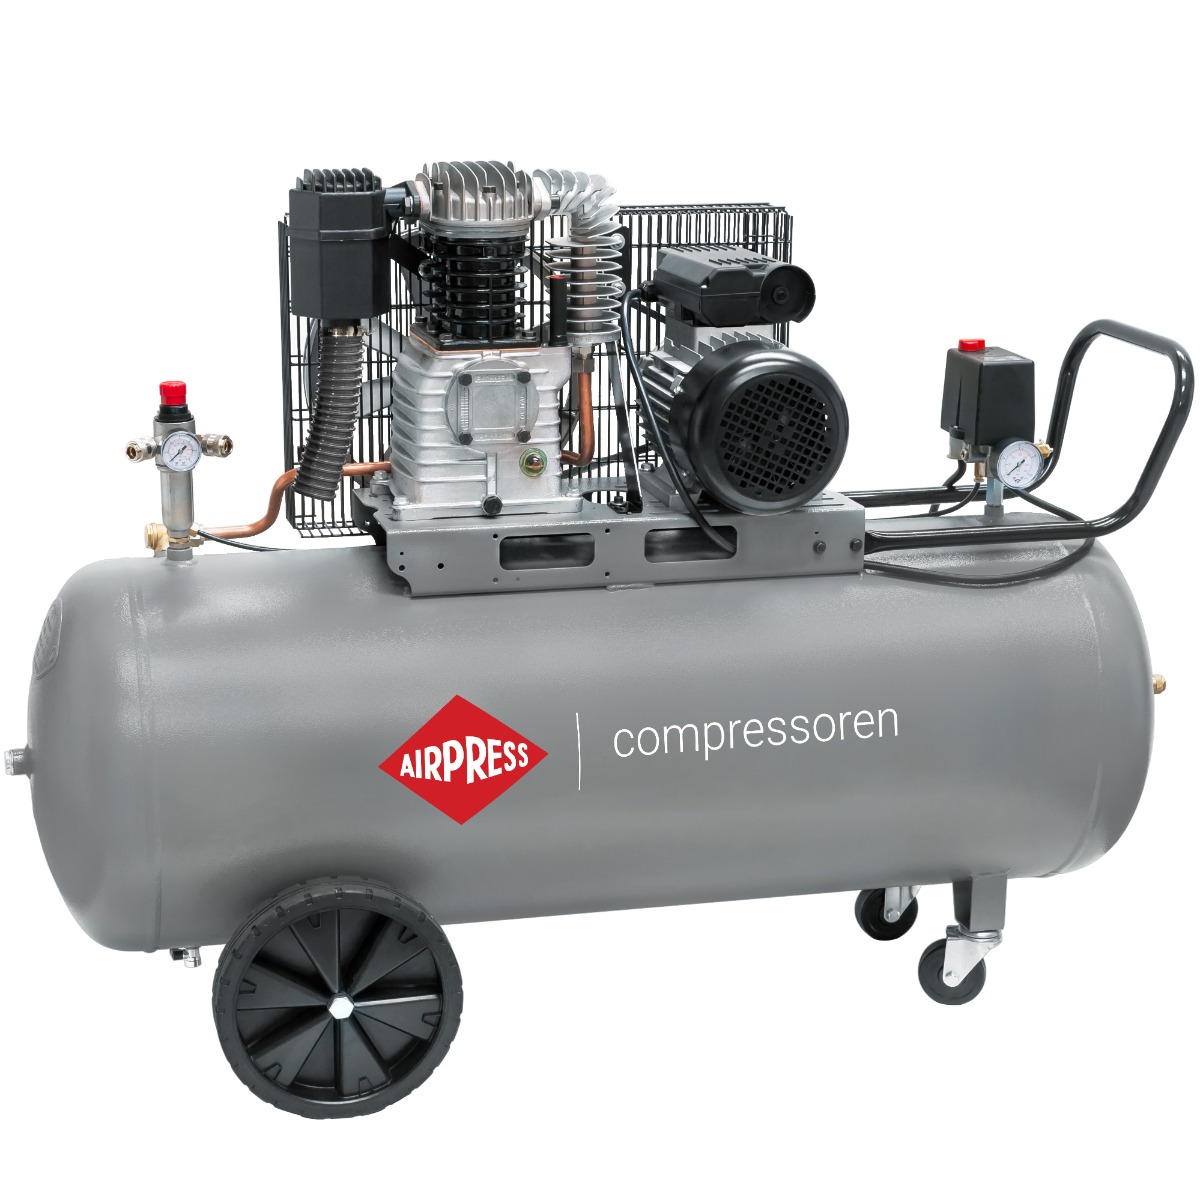 HL 425-150 Pro compressor